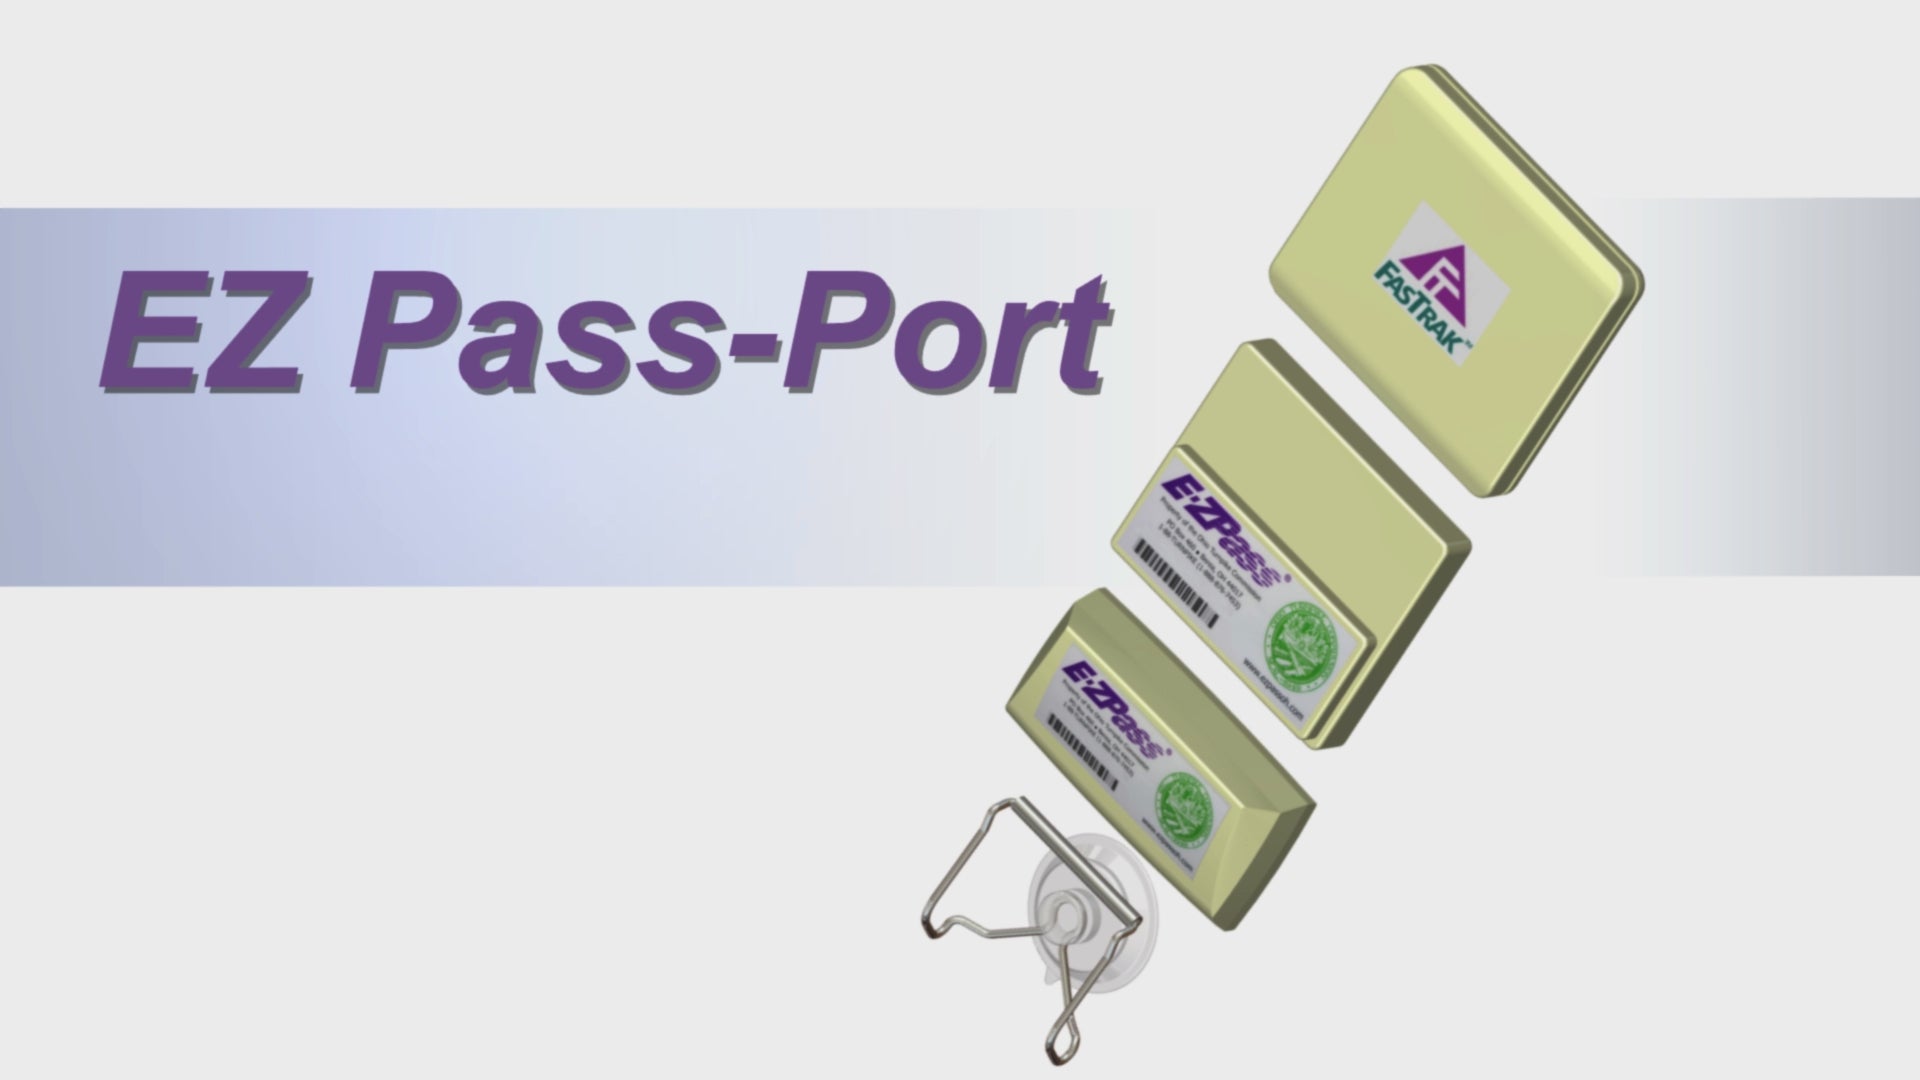 EZ Pass-Port™- UNBREAKABLE Toll Pass Holder for E-ZPass, I Pass